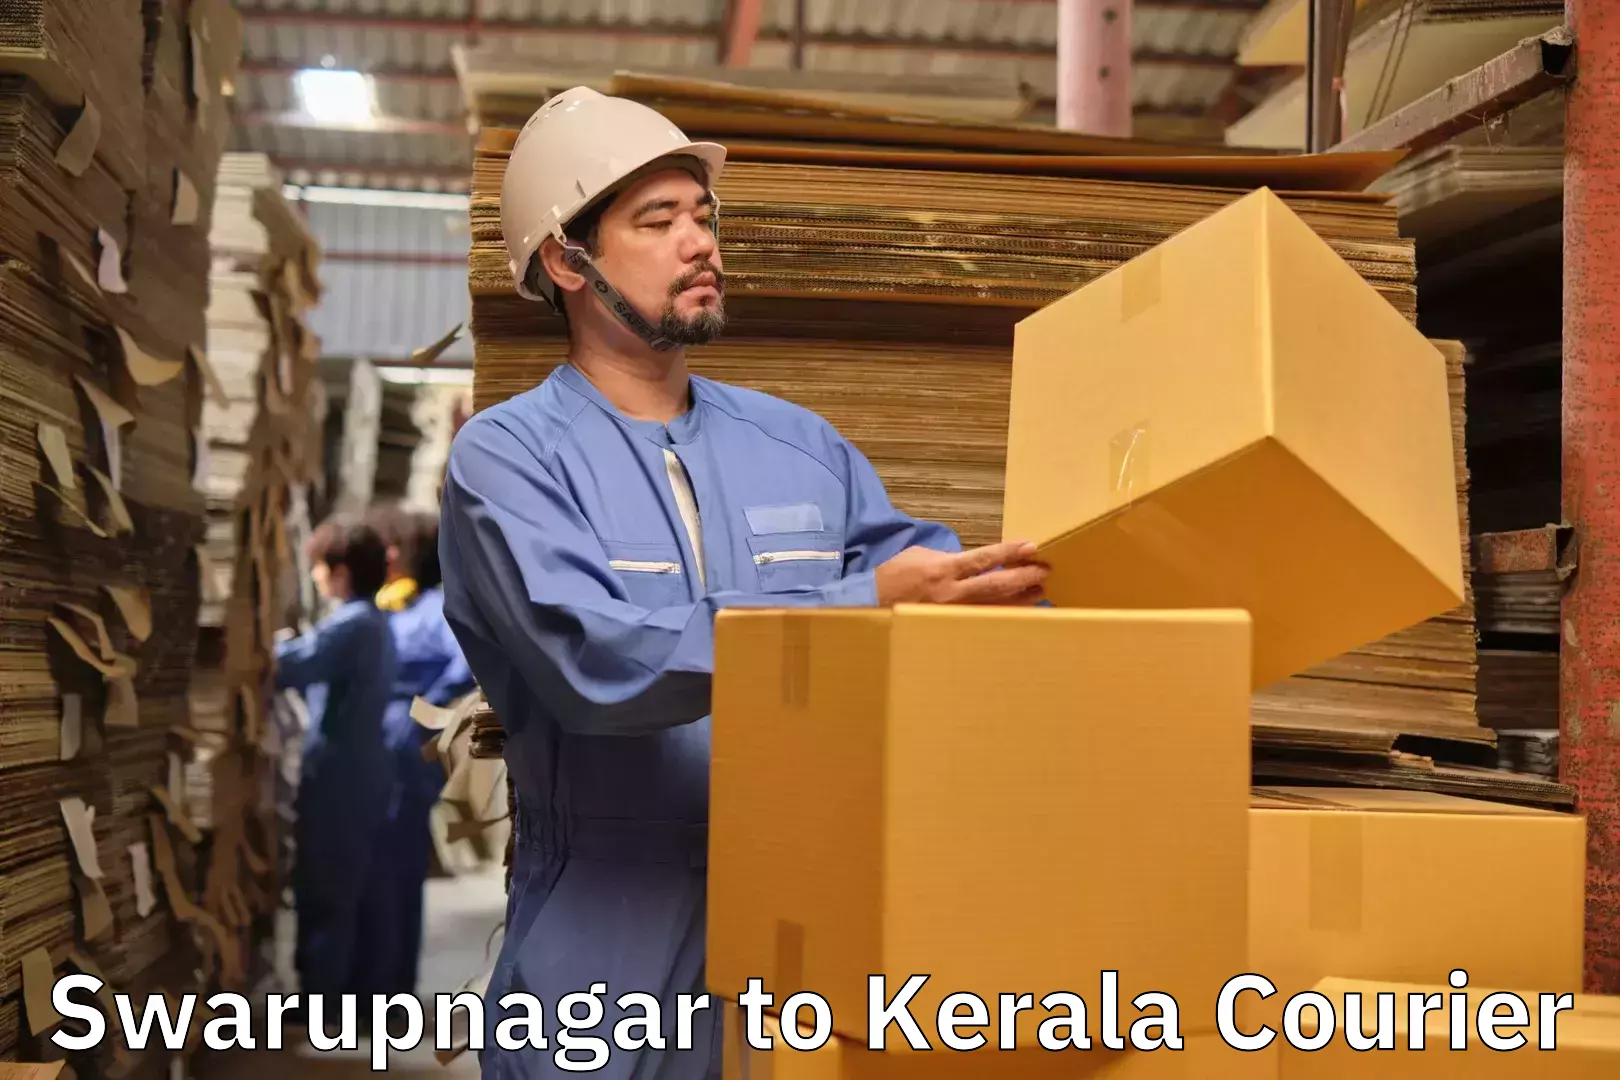 Baggage shipping experts Swarupnagar to Kodungallur